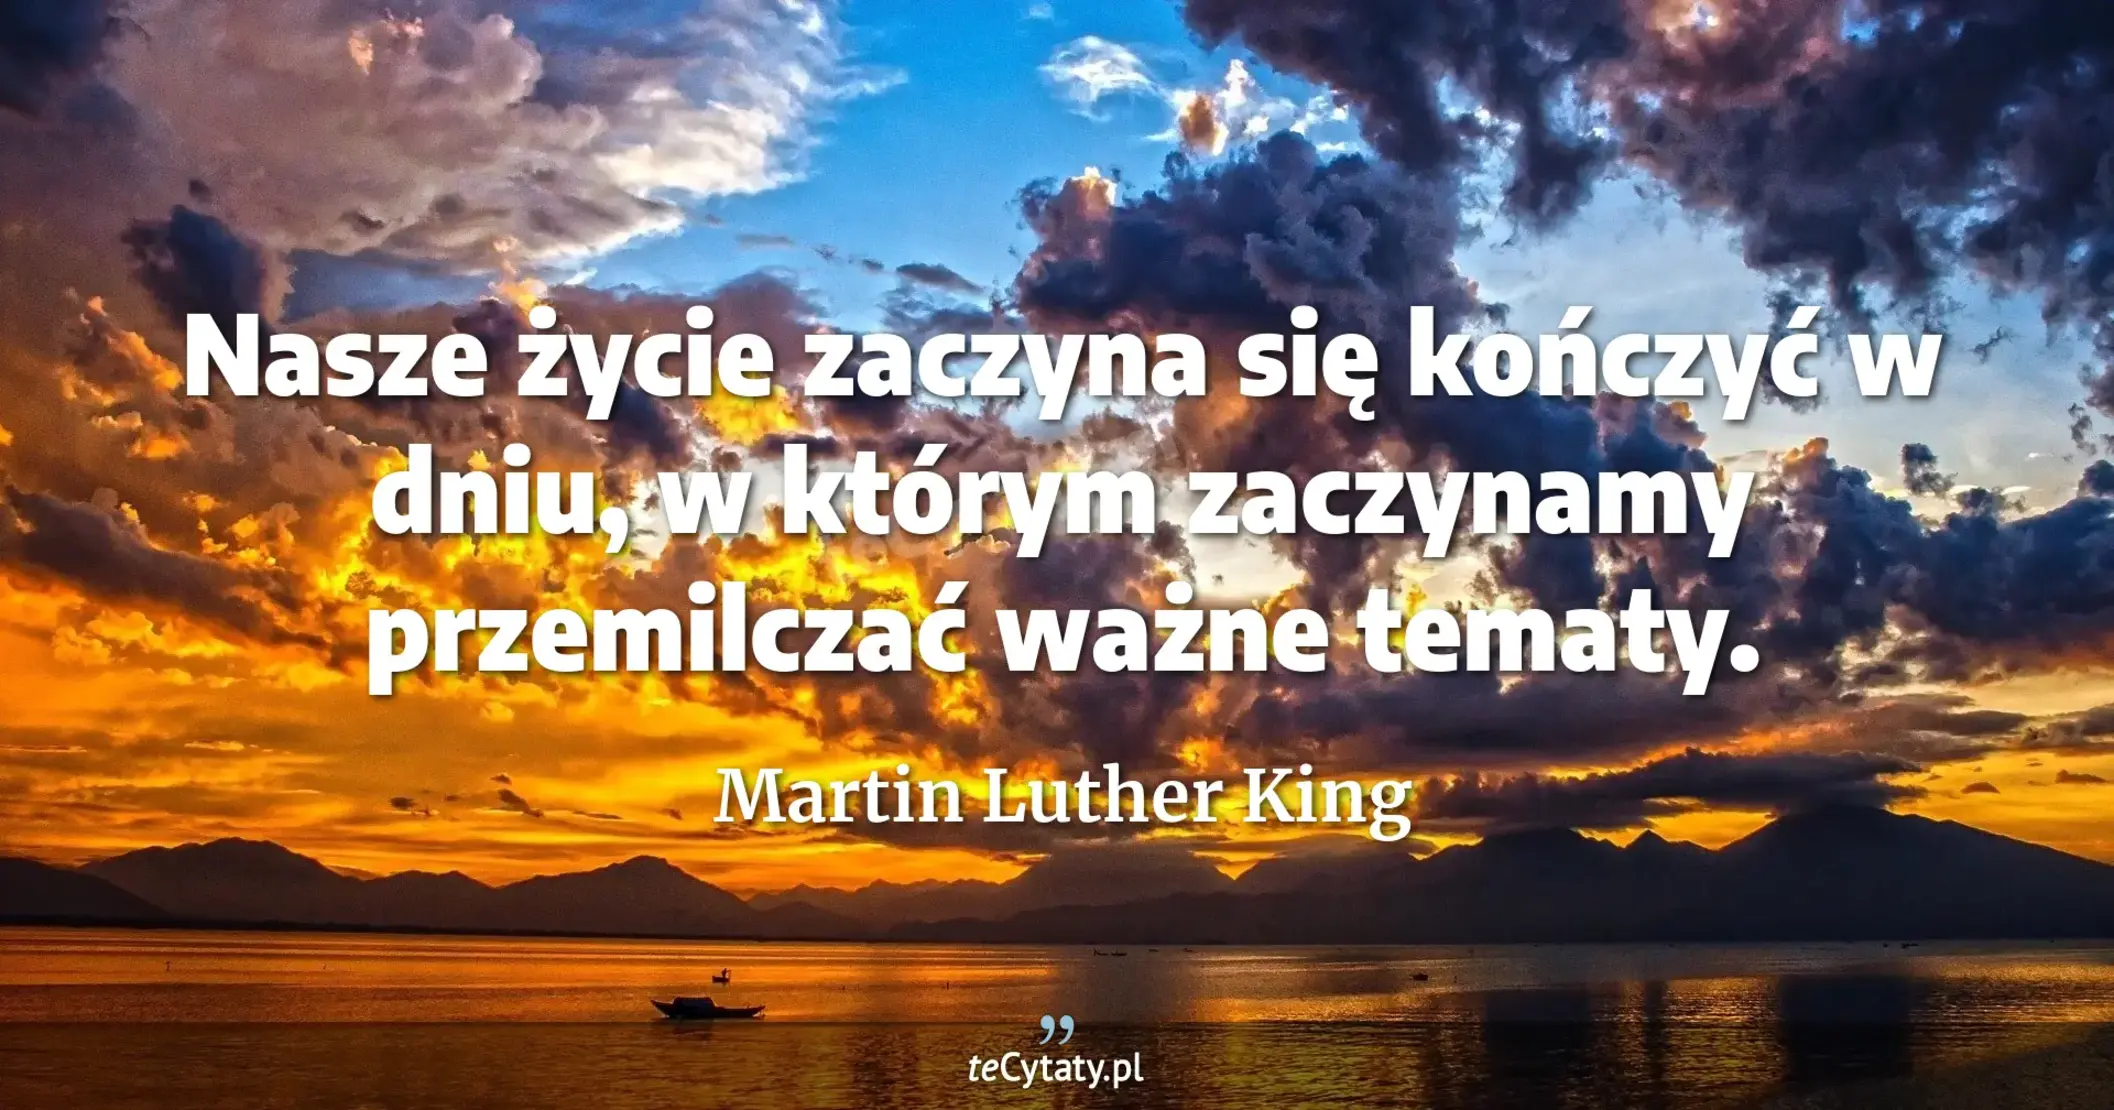 Nasze życie zaczyna się kończyć w dniu, w którym zaczynamy przemilczać ważne tematy. - Martin Luther King